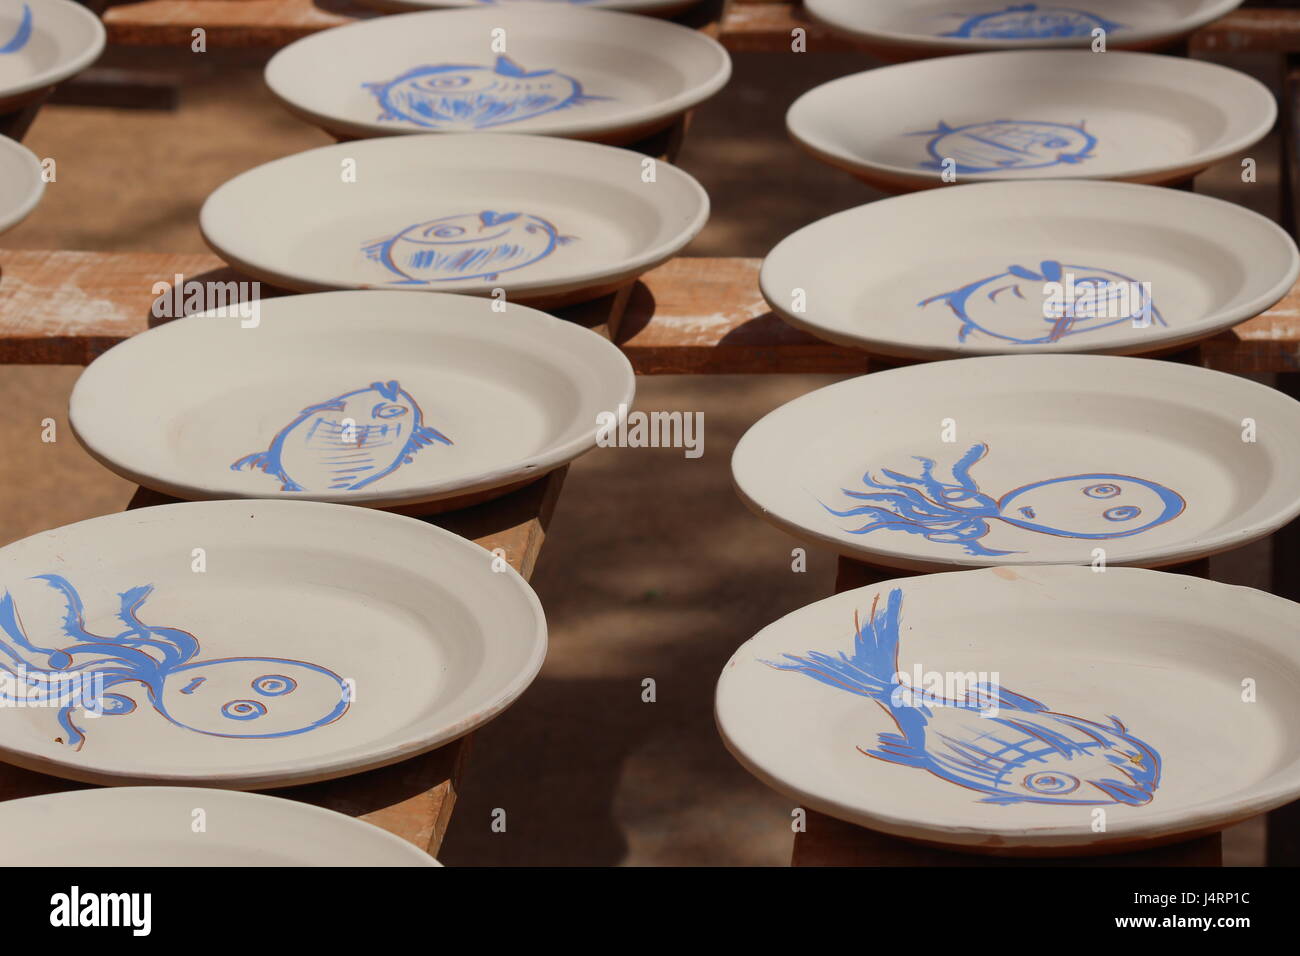 Les plaques de céramique espagnole avec des dessins de poissons bleus sur fond blanc sur des étagères de séchage au soleil Banque D'Images